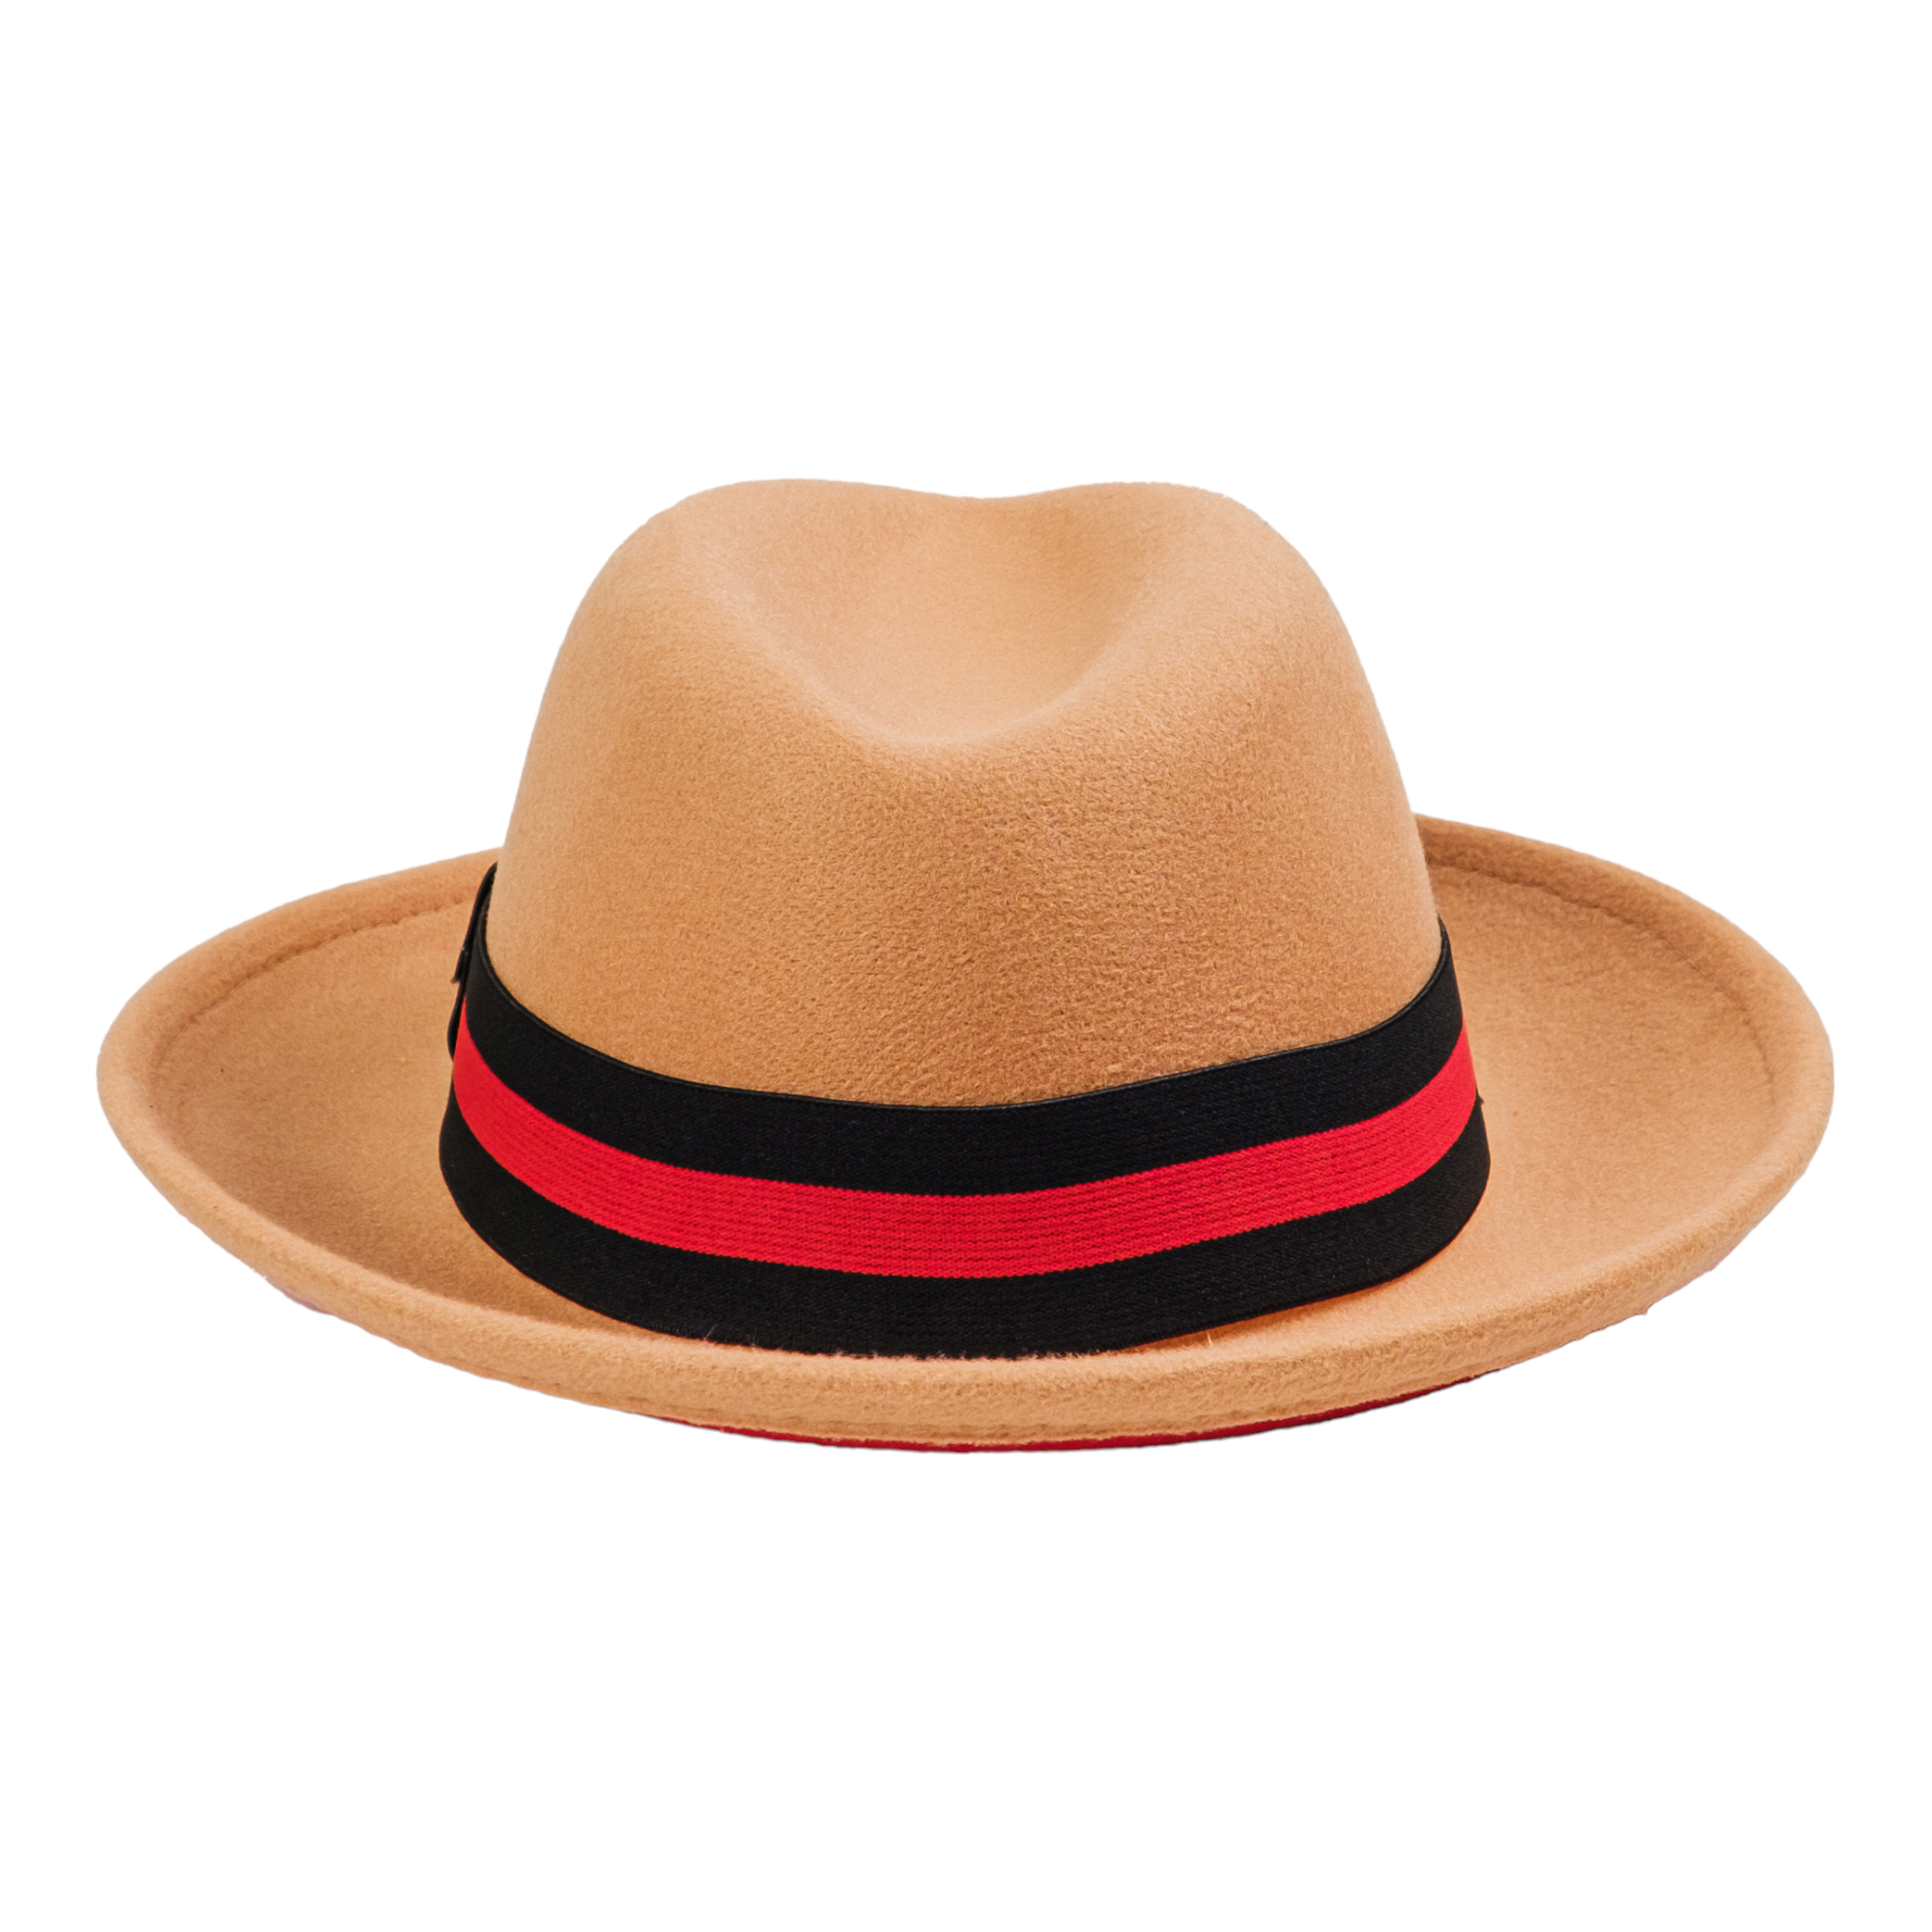 Chokore Double-tone Fedora Hat (Camel)